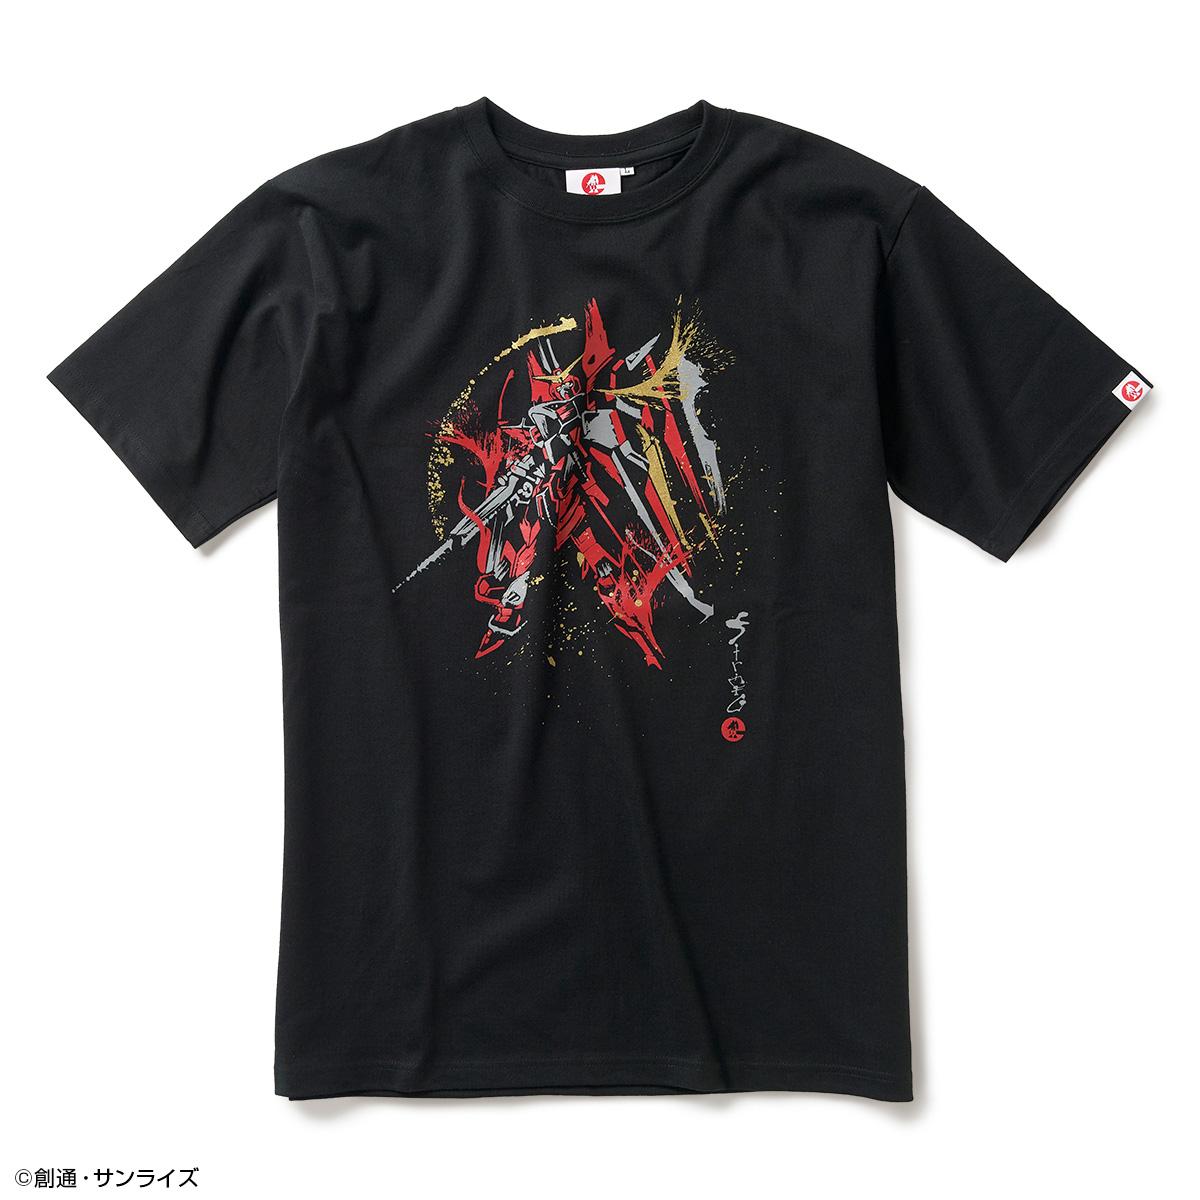 STRICT-G JAPAN『機動戦士ガンダムSEED』Tシャツ 筆絵風ジャスティスガンダム柄